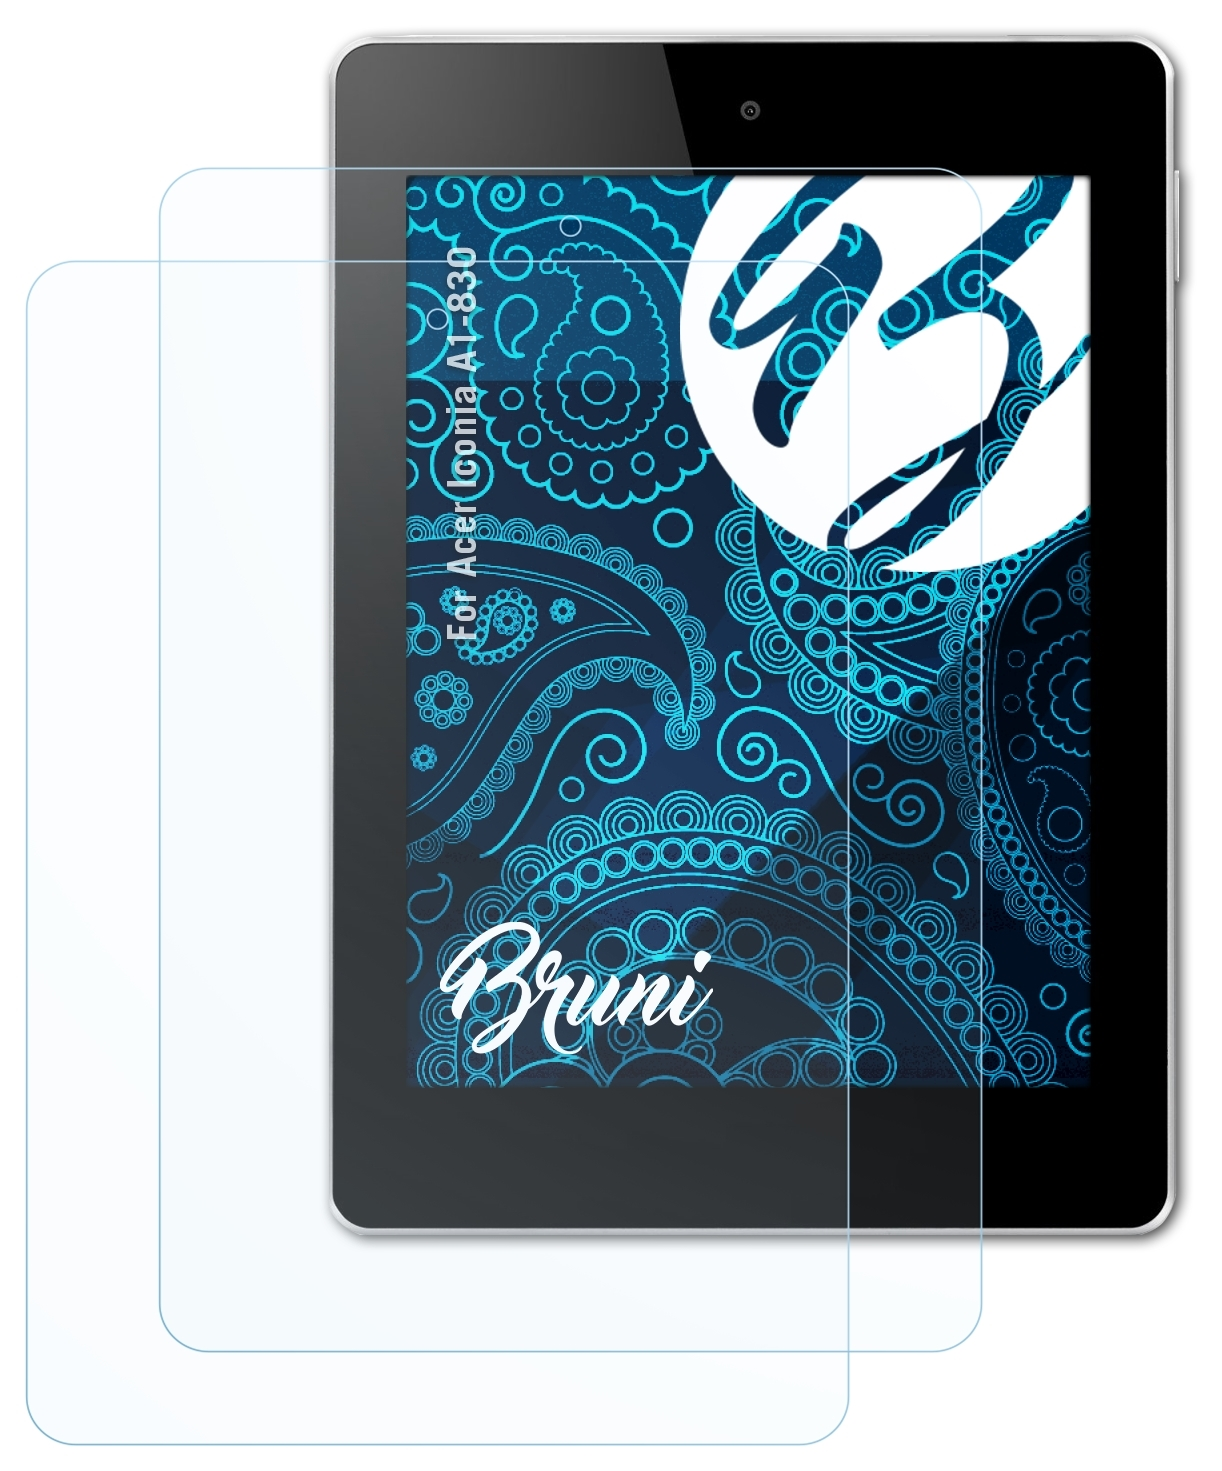 BRUNI 2x Basics-Clear Schutzfolie(für Acer Iconia A1-830)